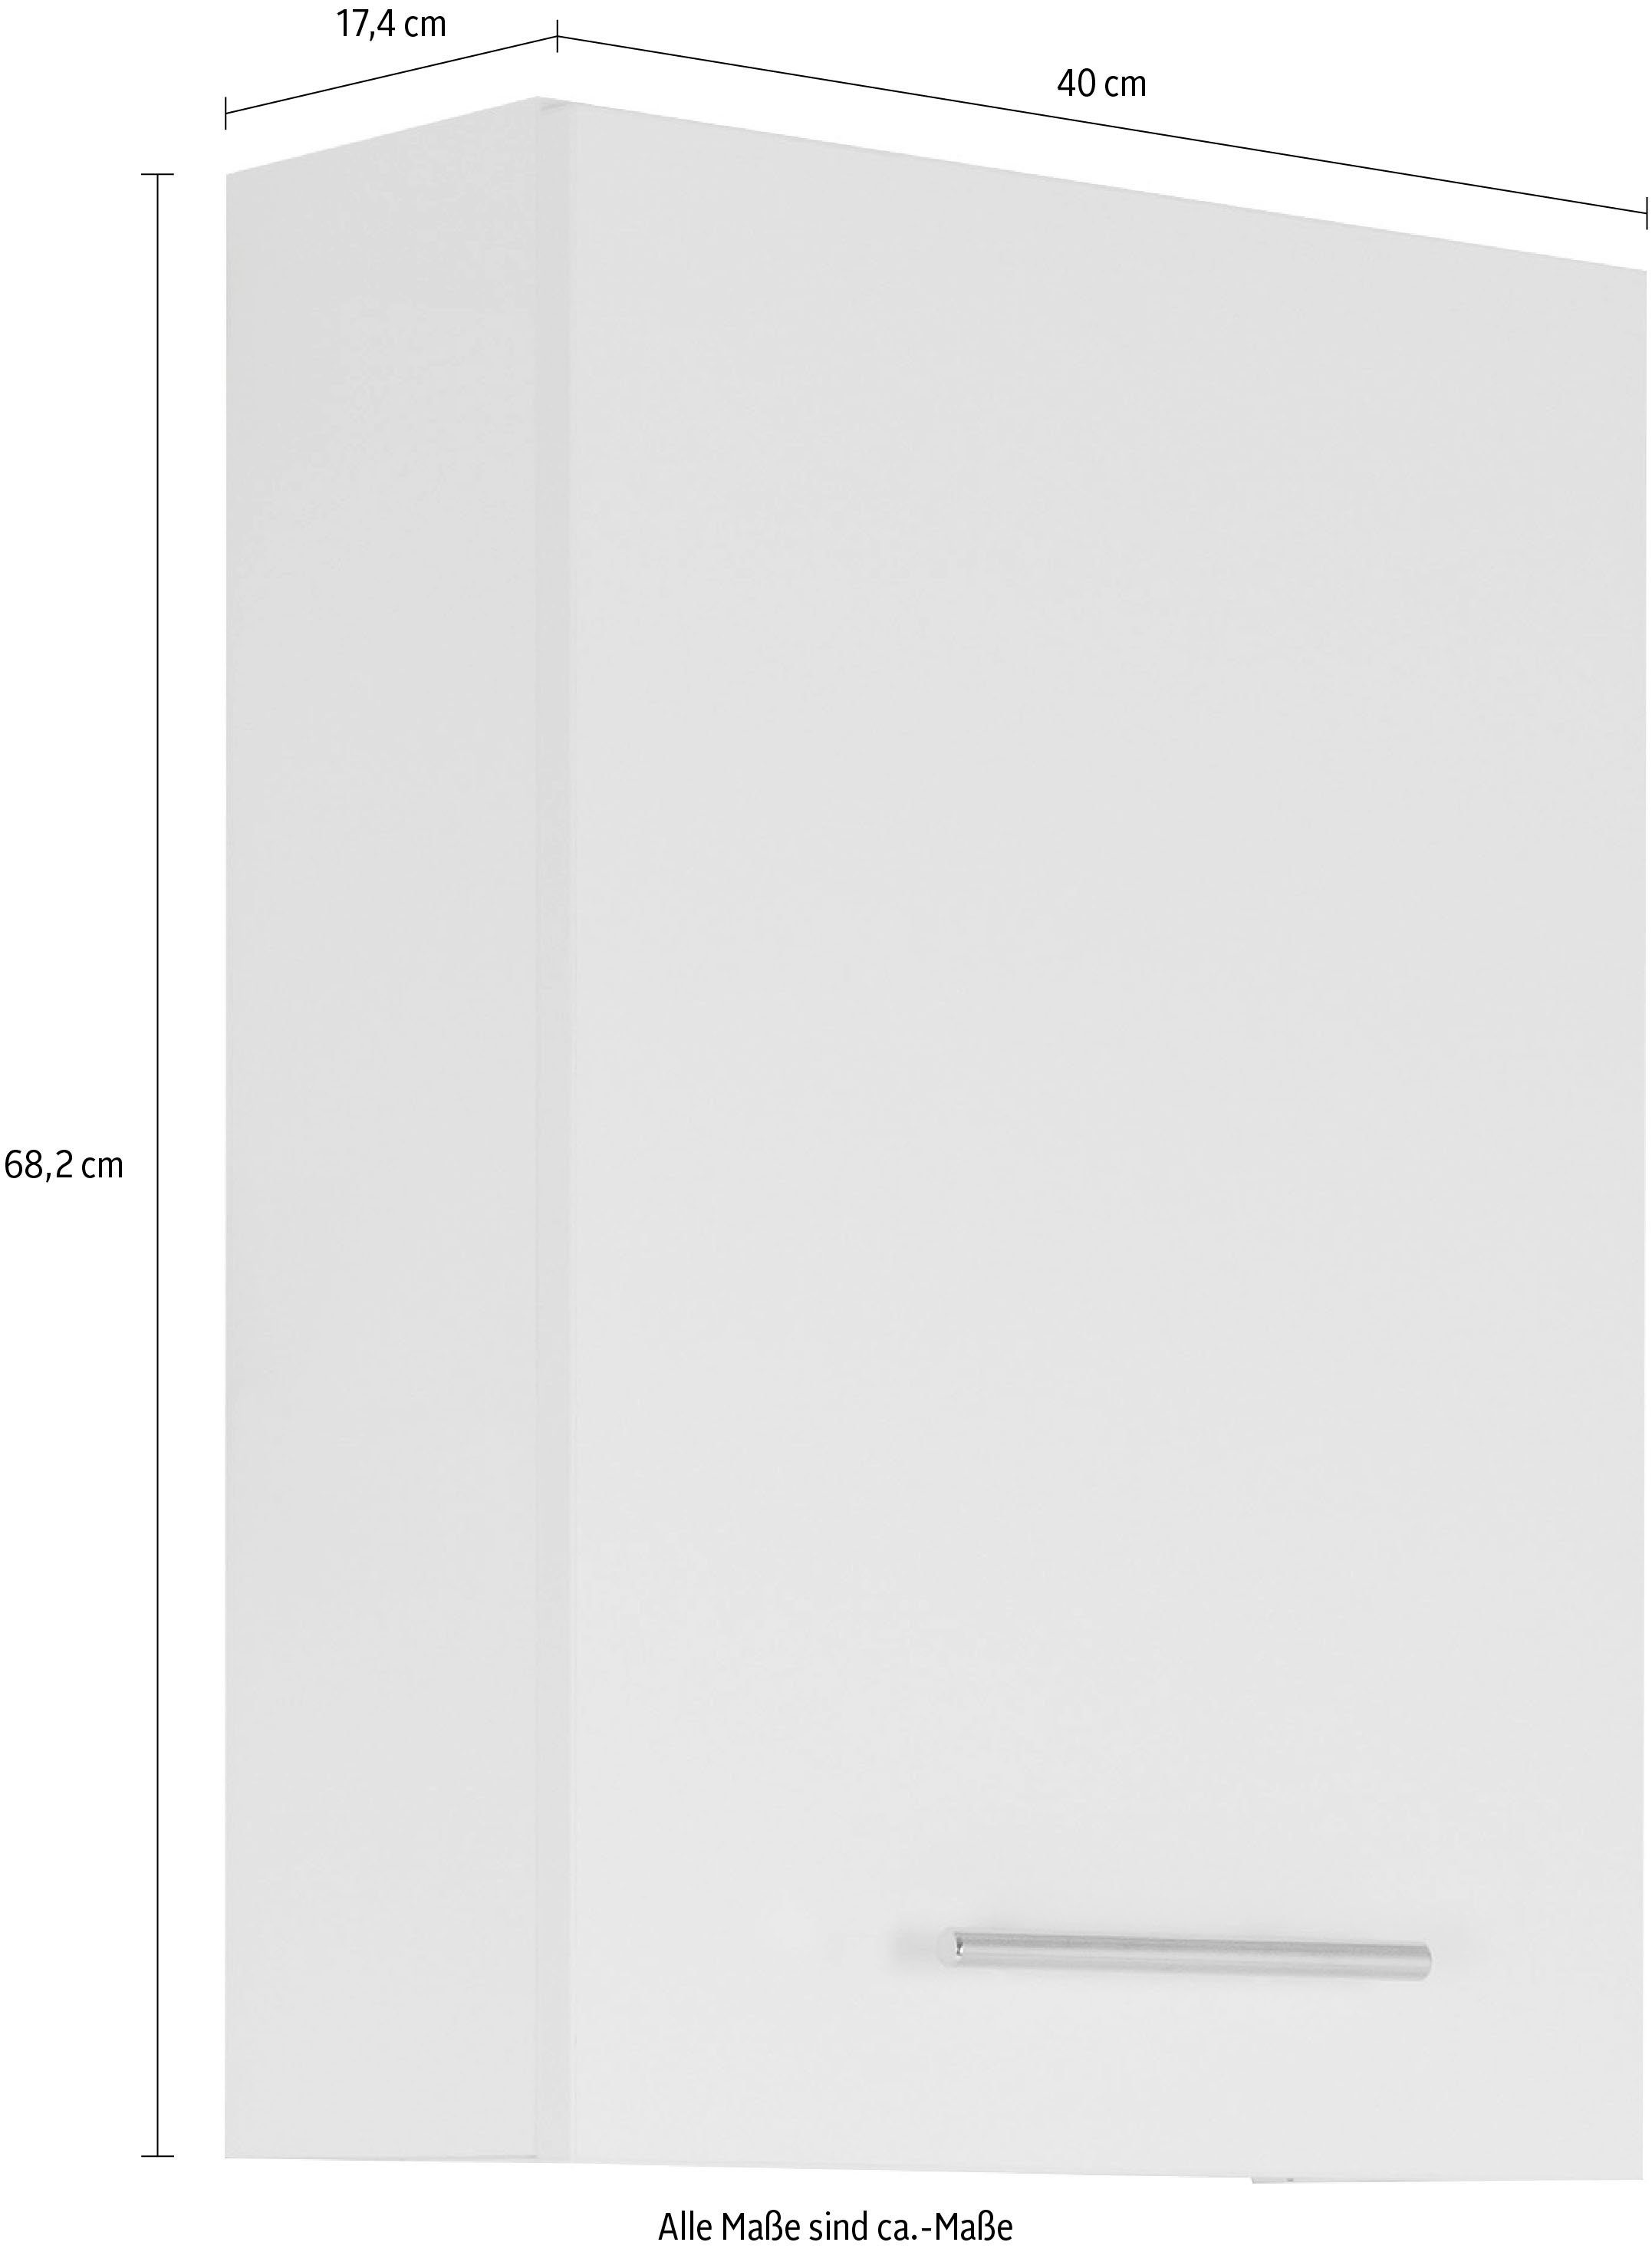 MARLIN Hängeschrank anthrazit Breite | 3040, rot 40 cm